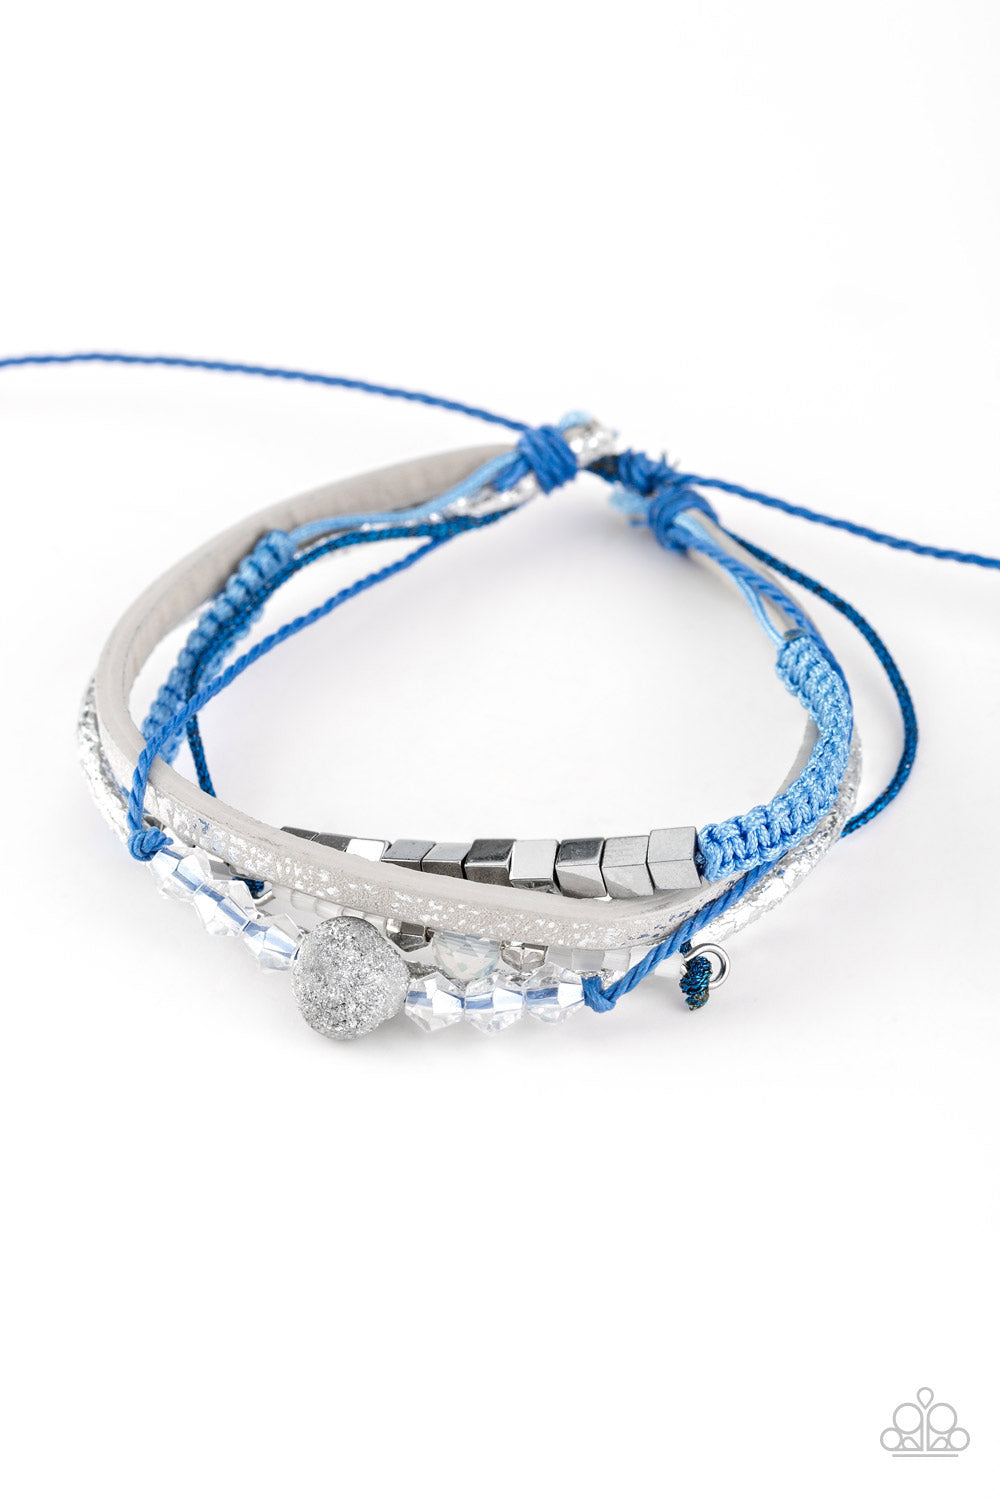 Paparazzi Take A SPACEWALK - Blue - Corded Leather Sliding Knot Bracelet - $5 Jewelry With Ashley Swint